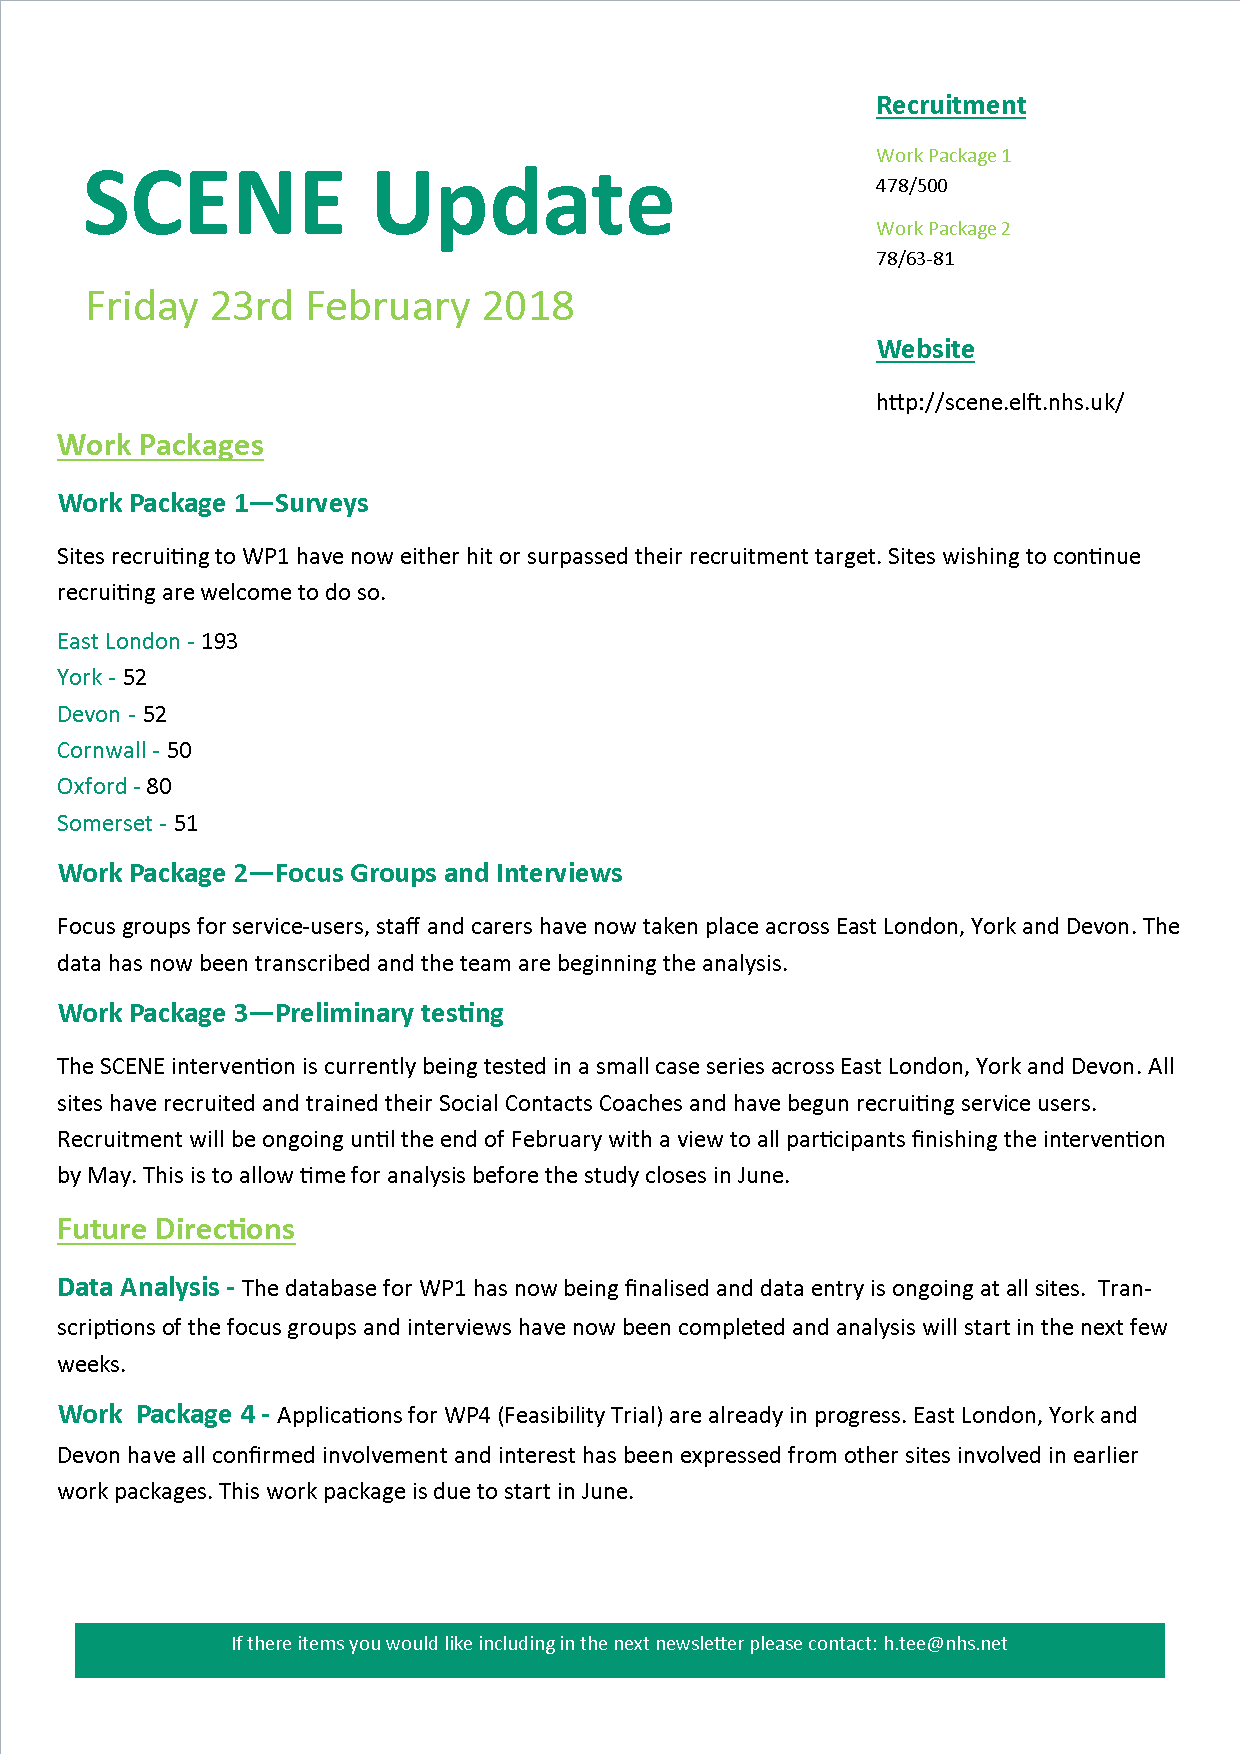 February 2018 Newsletter